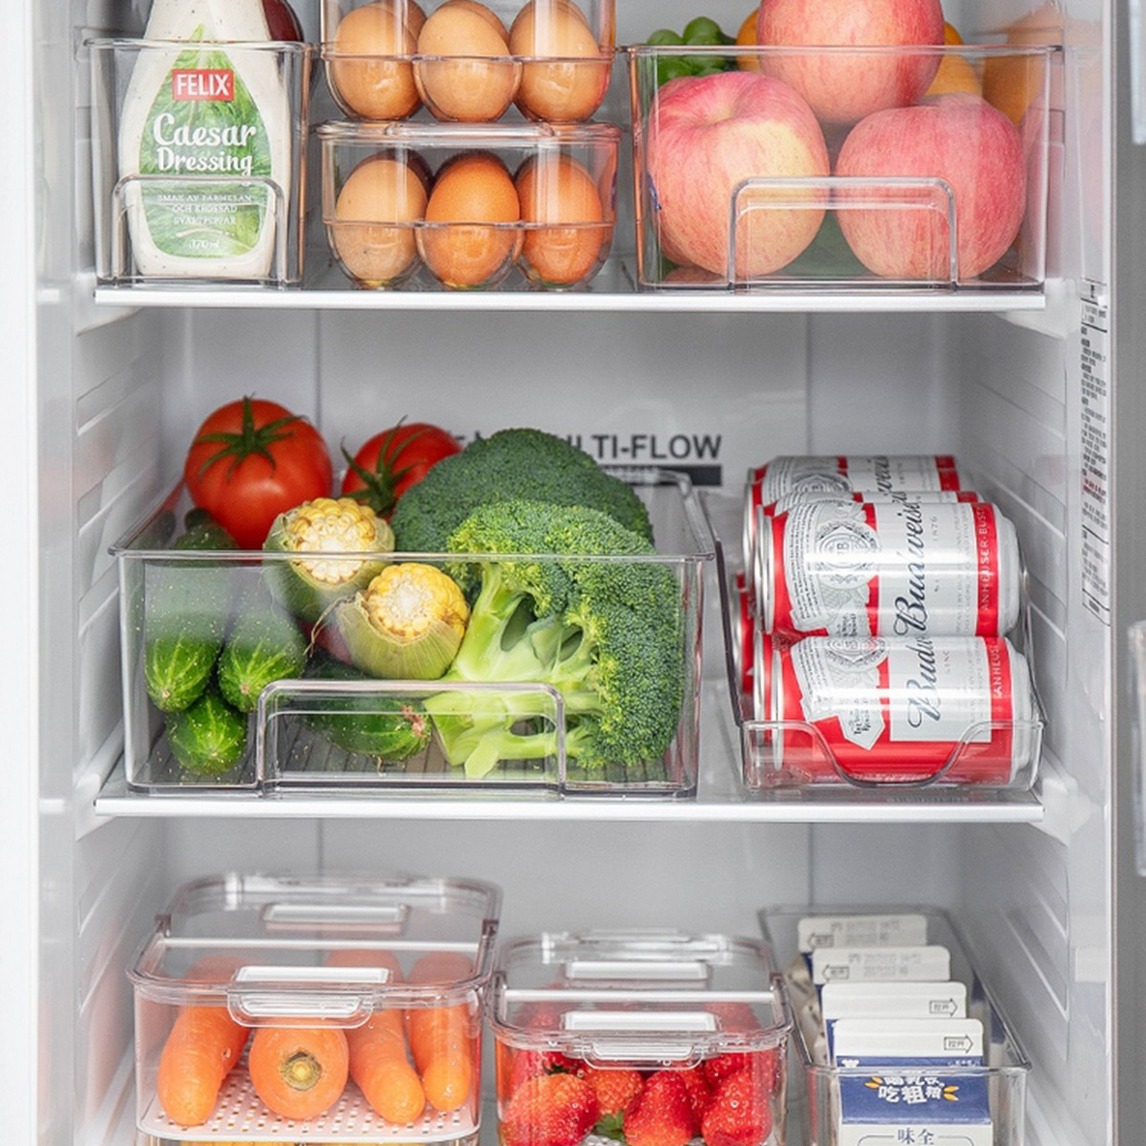 冰箱里的食物图片大全-冰箱里的食物高清图片下载-觅知网